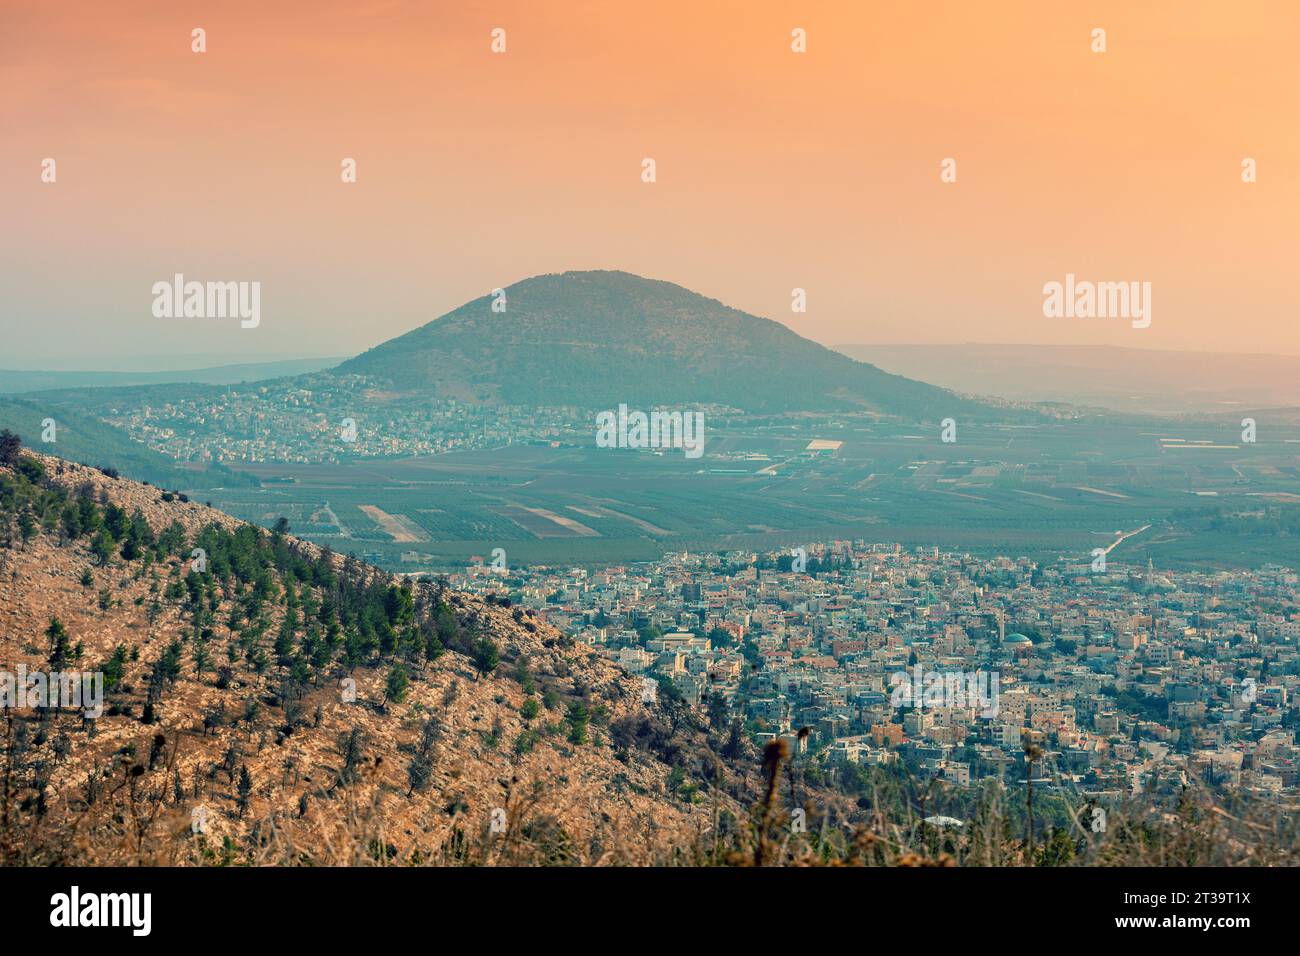 Vue depuis le mont précipice jusqu'à la réserve de montagne Tavor et les villages arabes d'Iksal et Daburiyya dans le nord d'Israël, au sud-est de Nazareth Banque D'Images